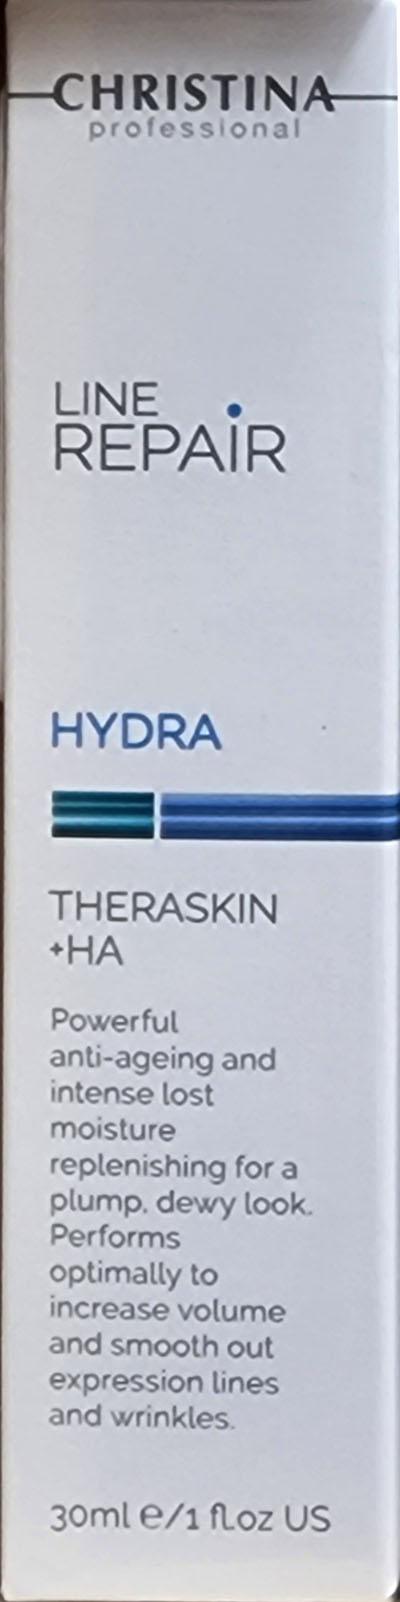 Christina Line Repair - Hydra - Theraskin + HA 30ml